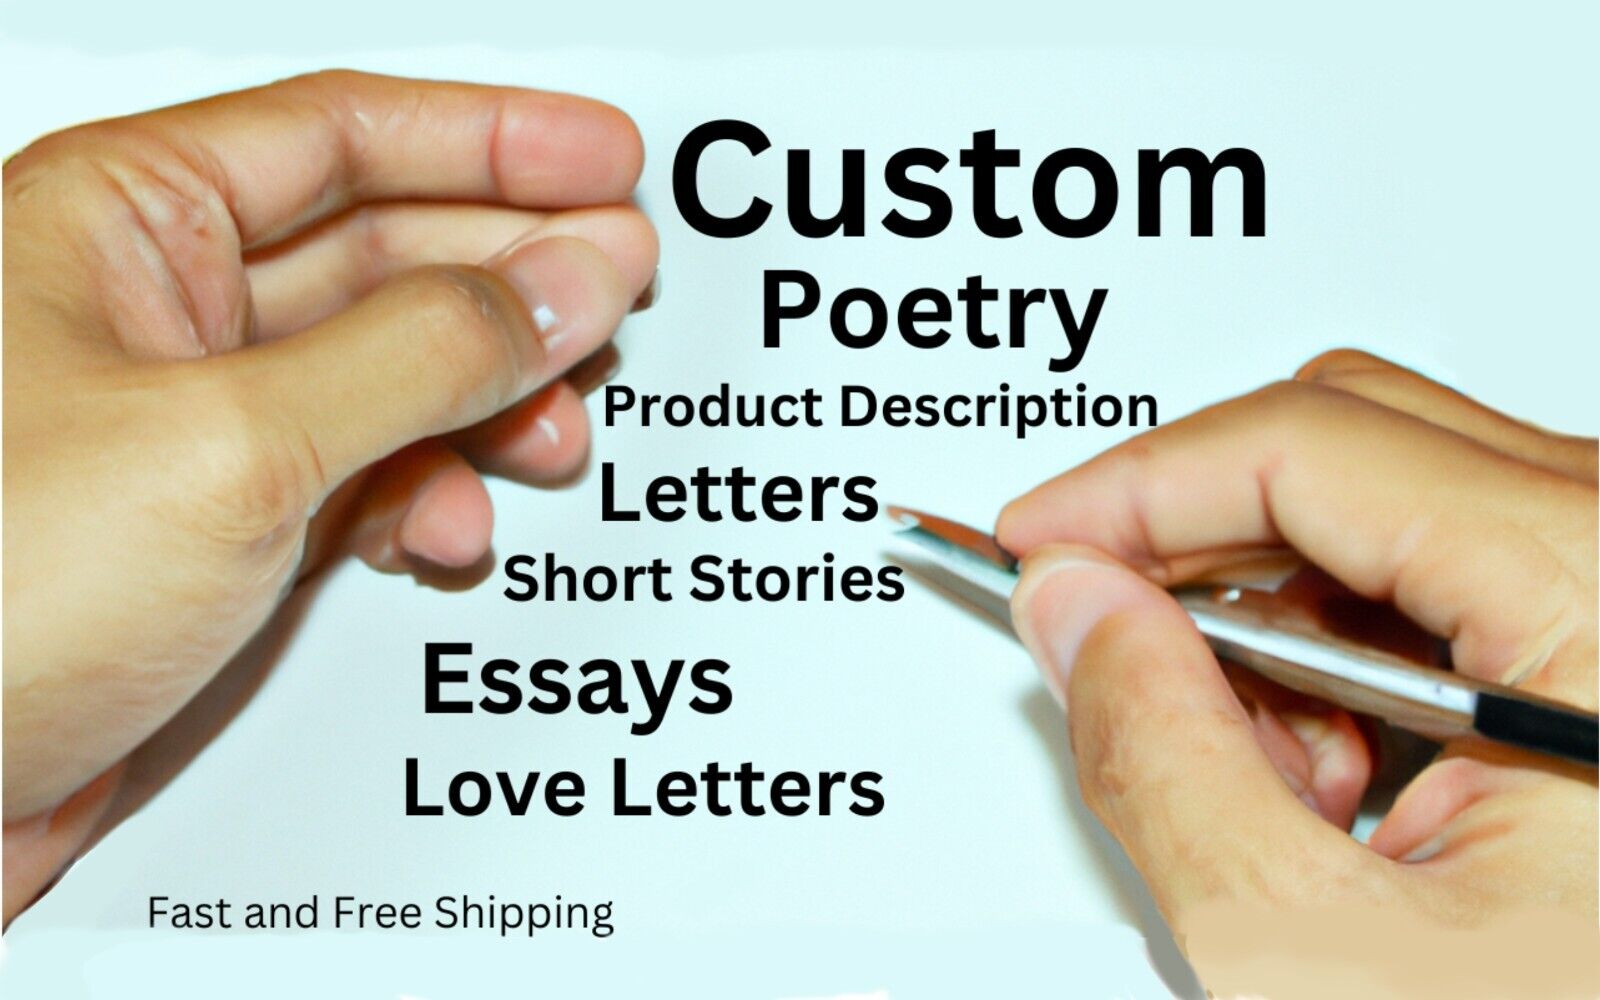 Custom Poetry, Product Description, Letters, Short Stories, Essays, Love Letters